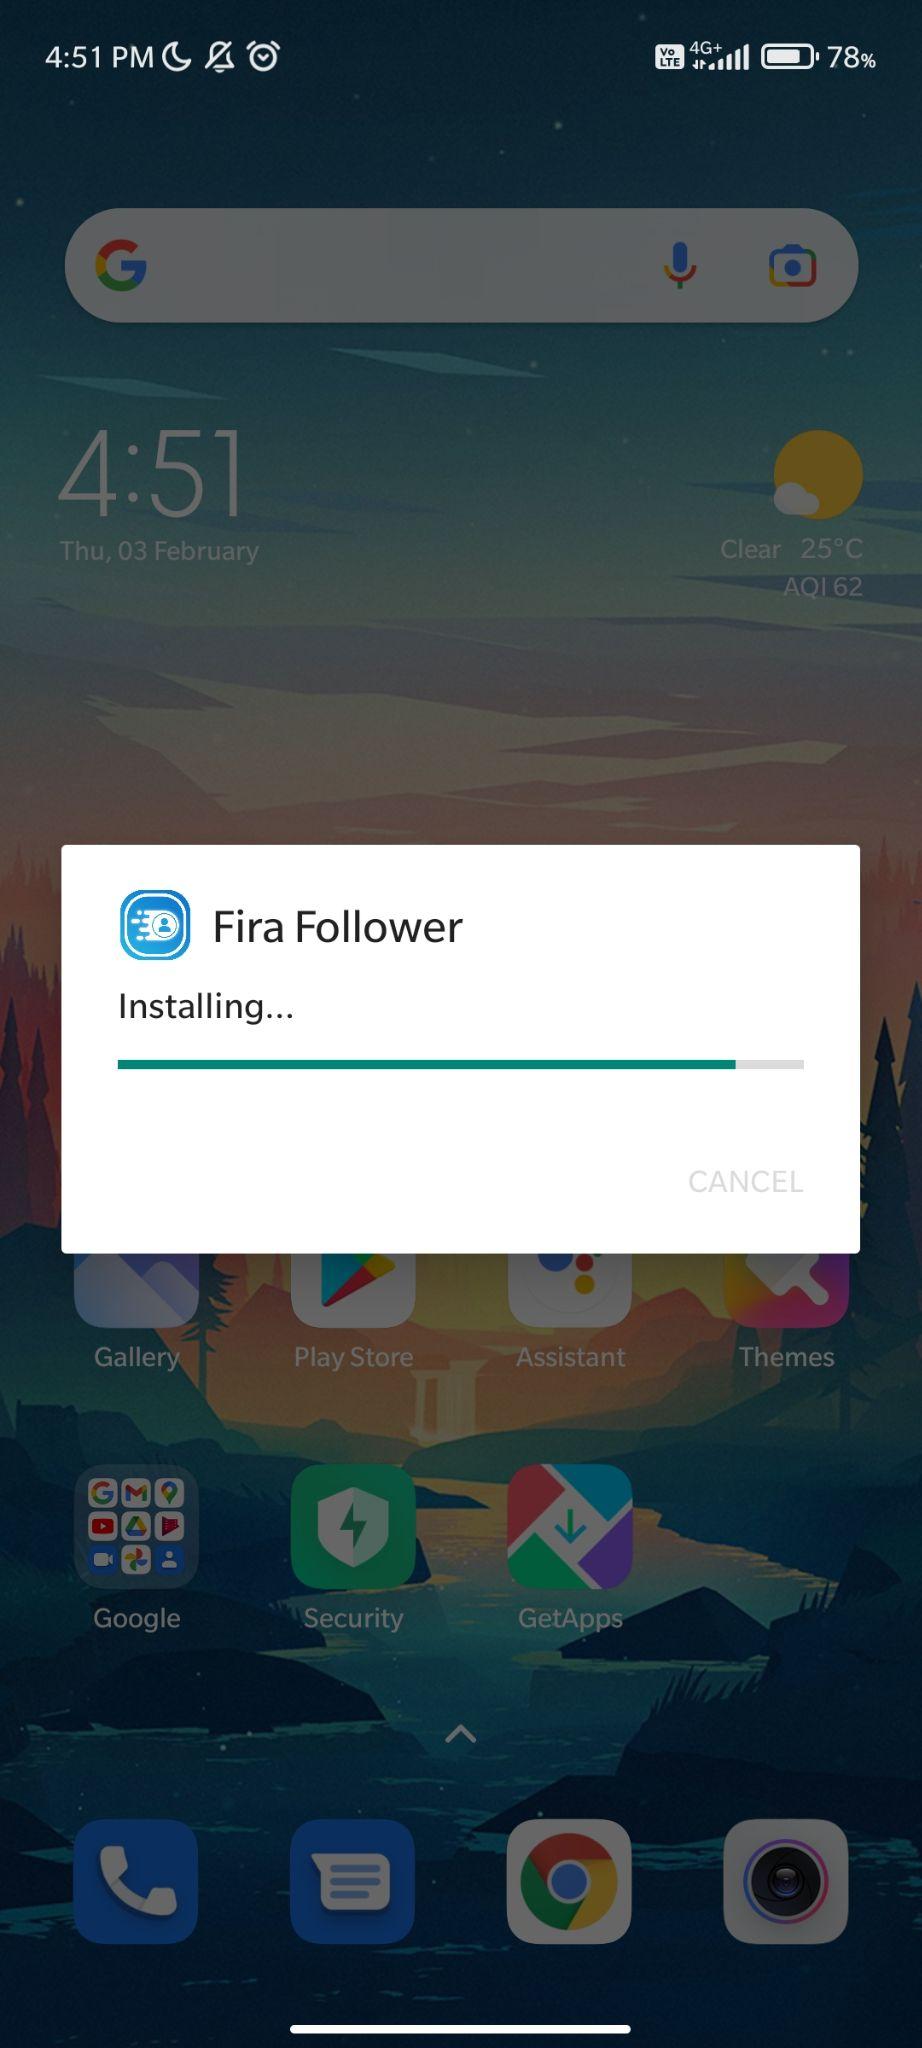 fira follower apk installing